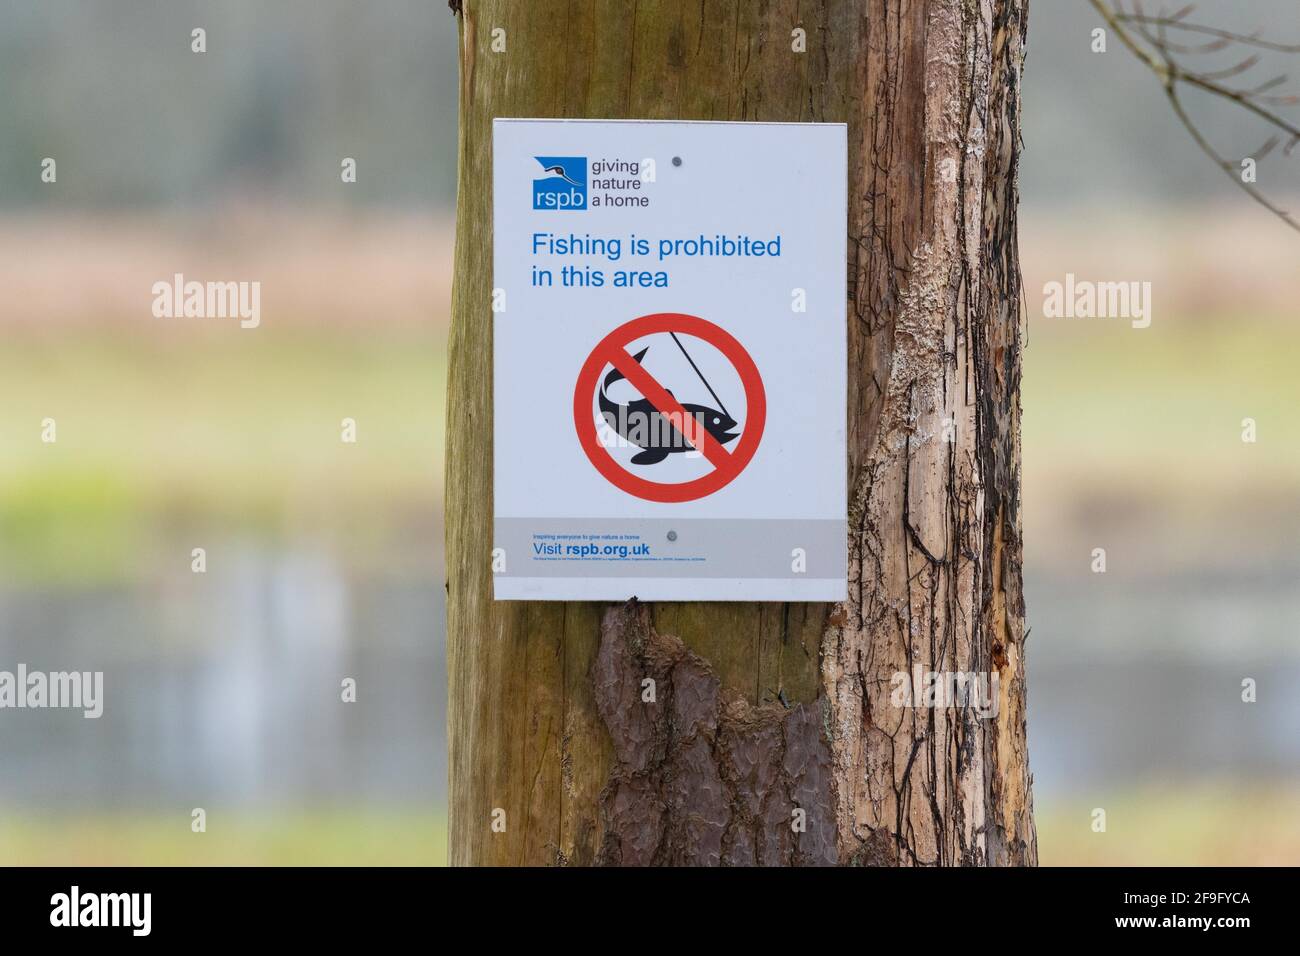 La pêche au RSPB est interdite dans cette zone panneau à Wards Pond, une partie de la réserve naturelle nationale du Loch Lomond et au rspb Loch Lomond, Écosse, Royaume-Uni Banque D'Images